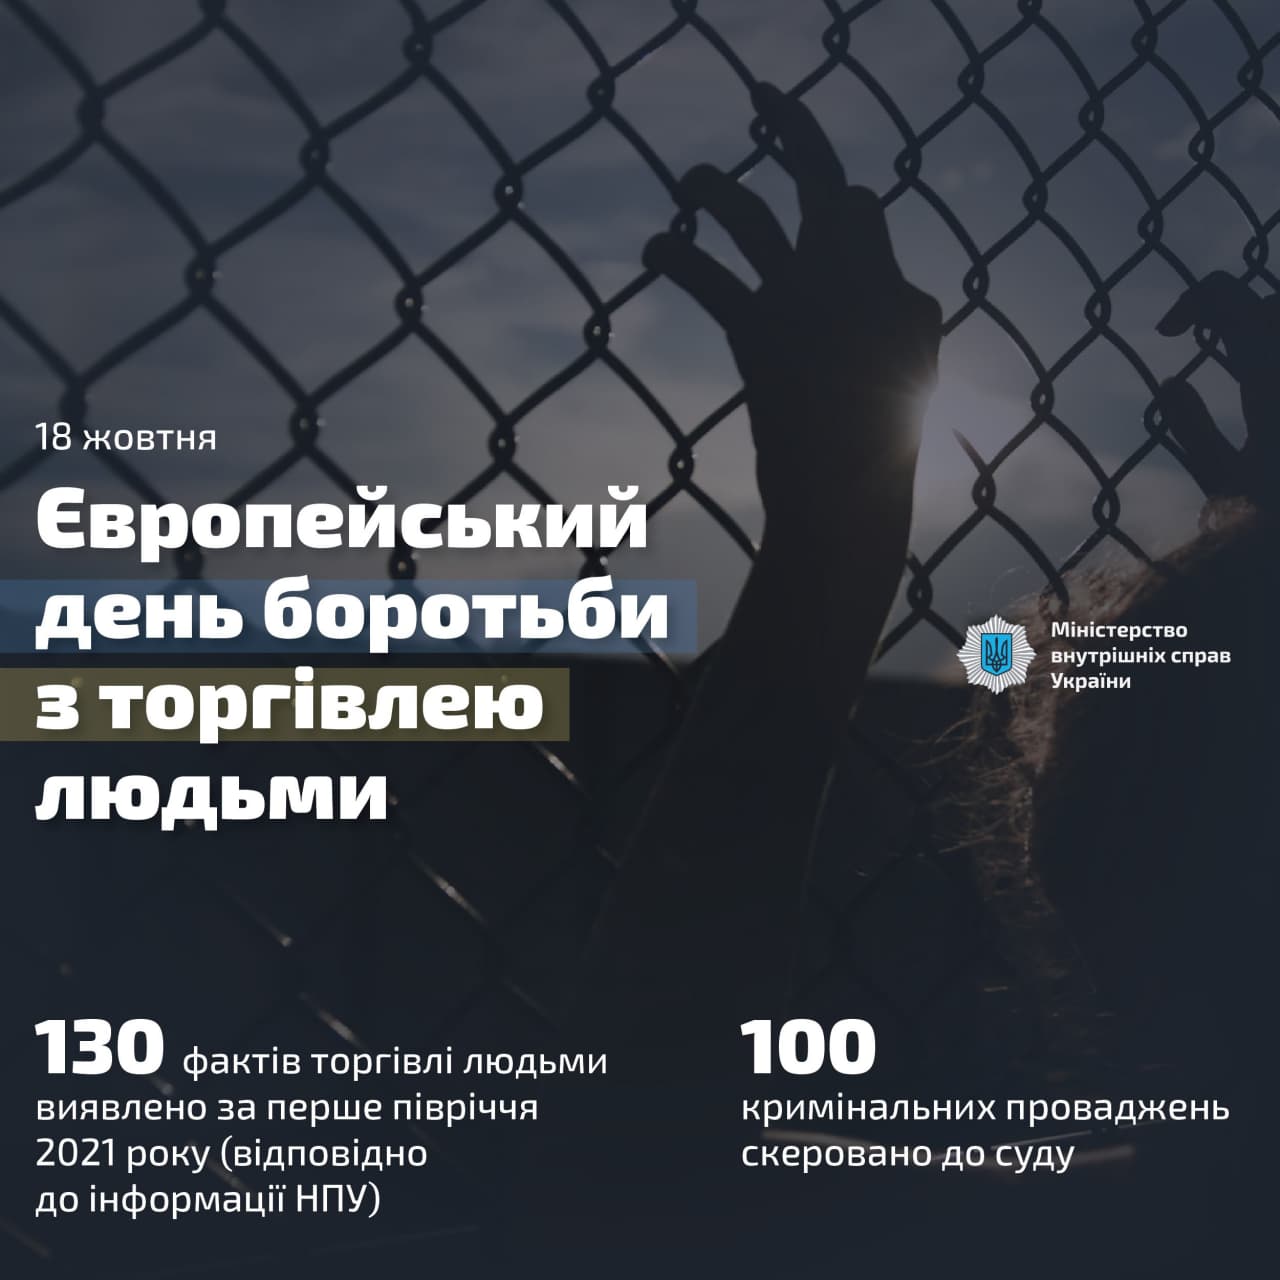 130 фактов торговли людьми и около 100 уголовных производств: результаты первого полугодия 2021 года